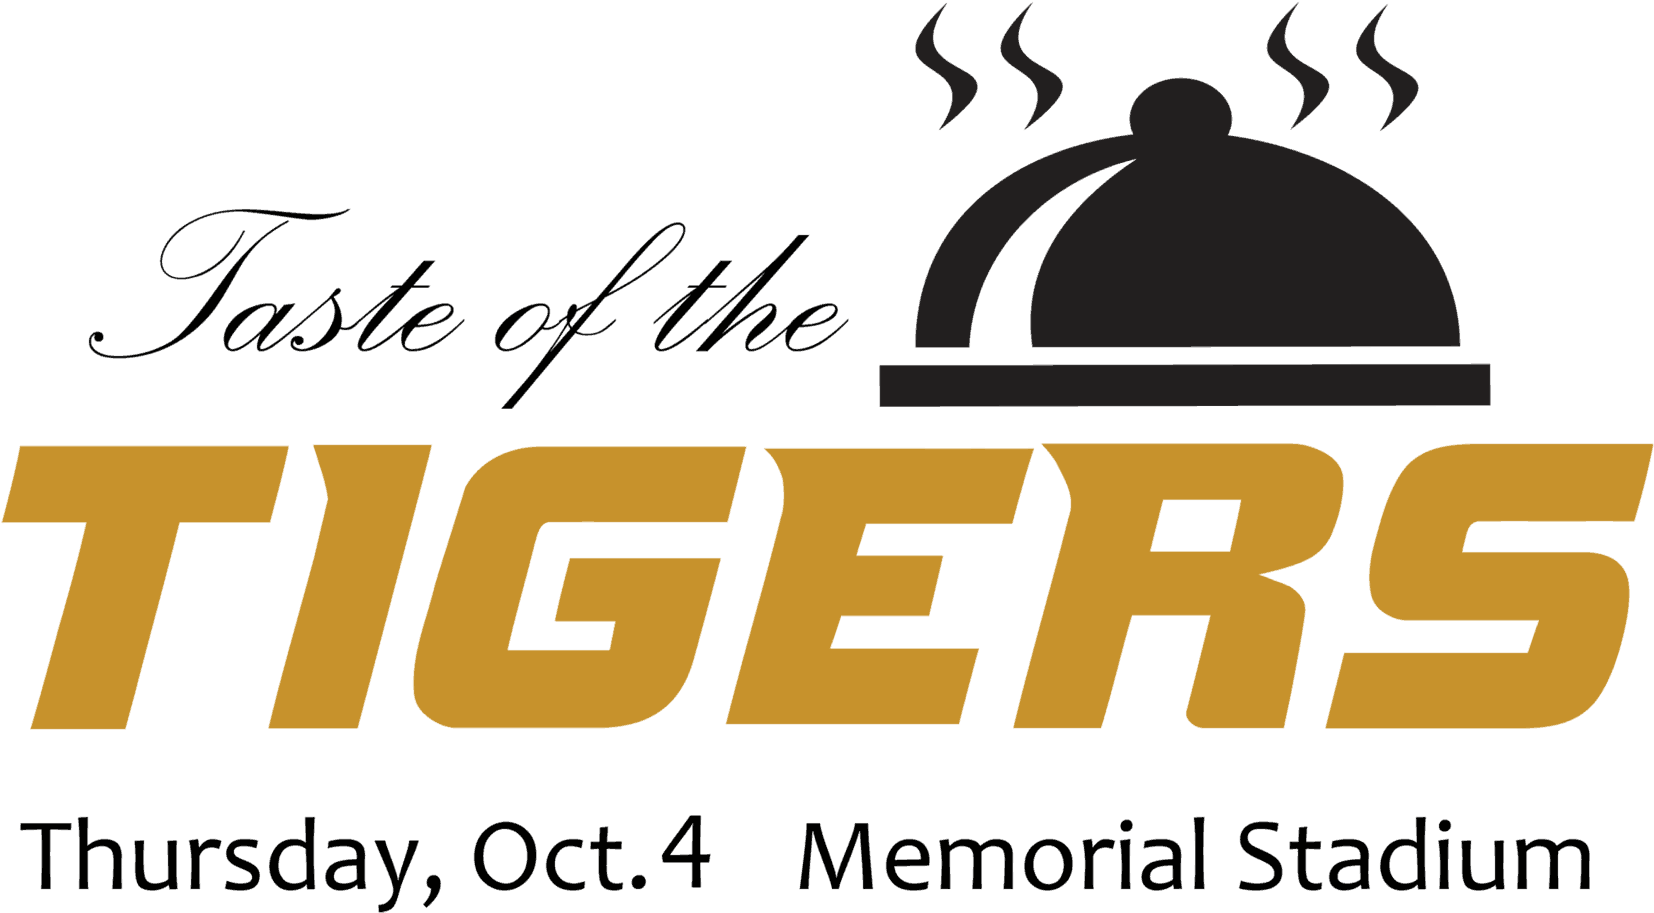 Missouri Tigers Football (1700x971)